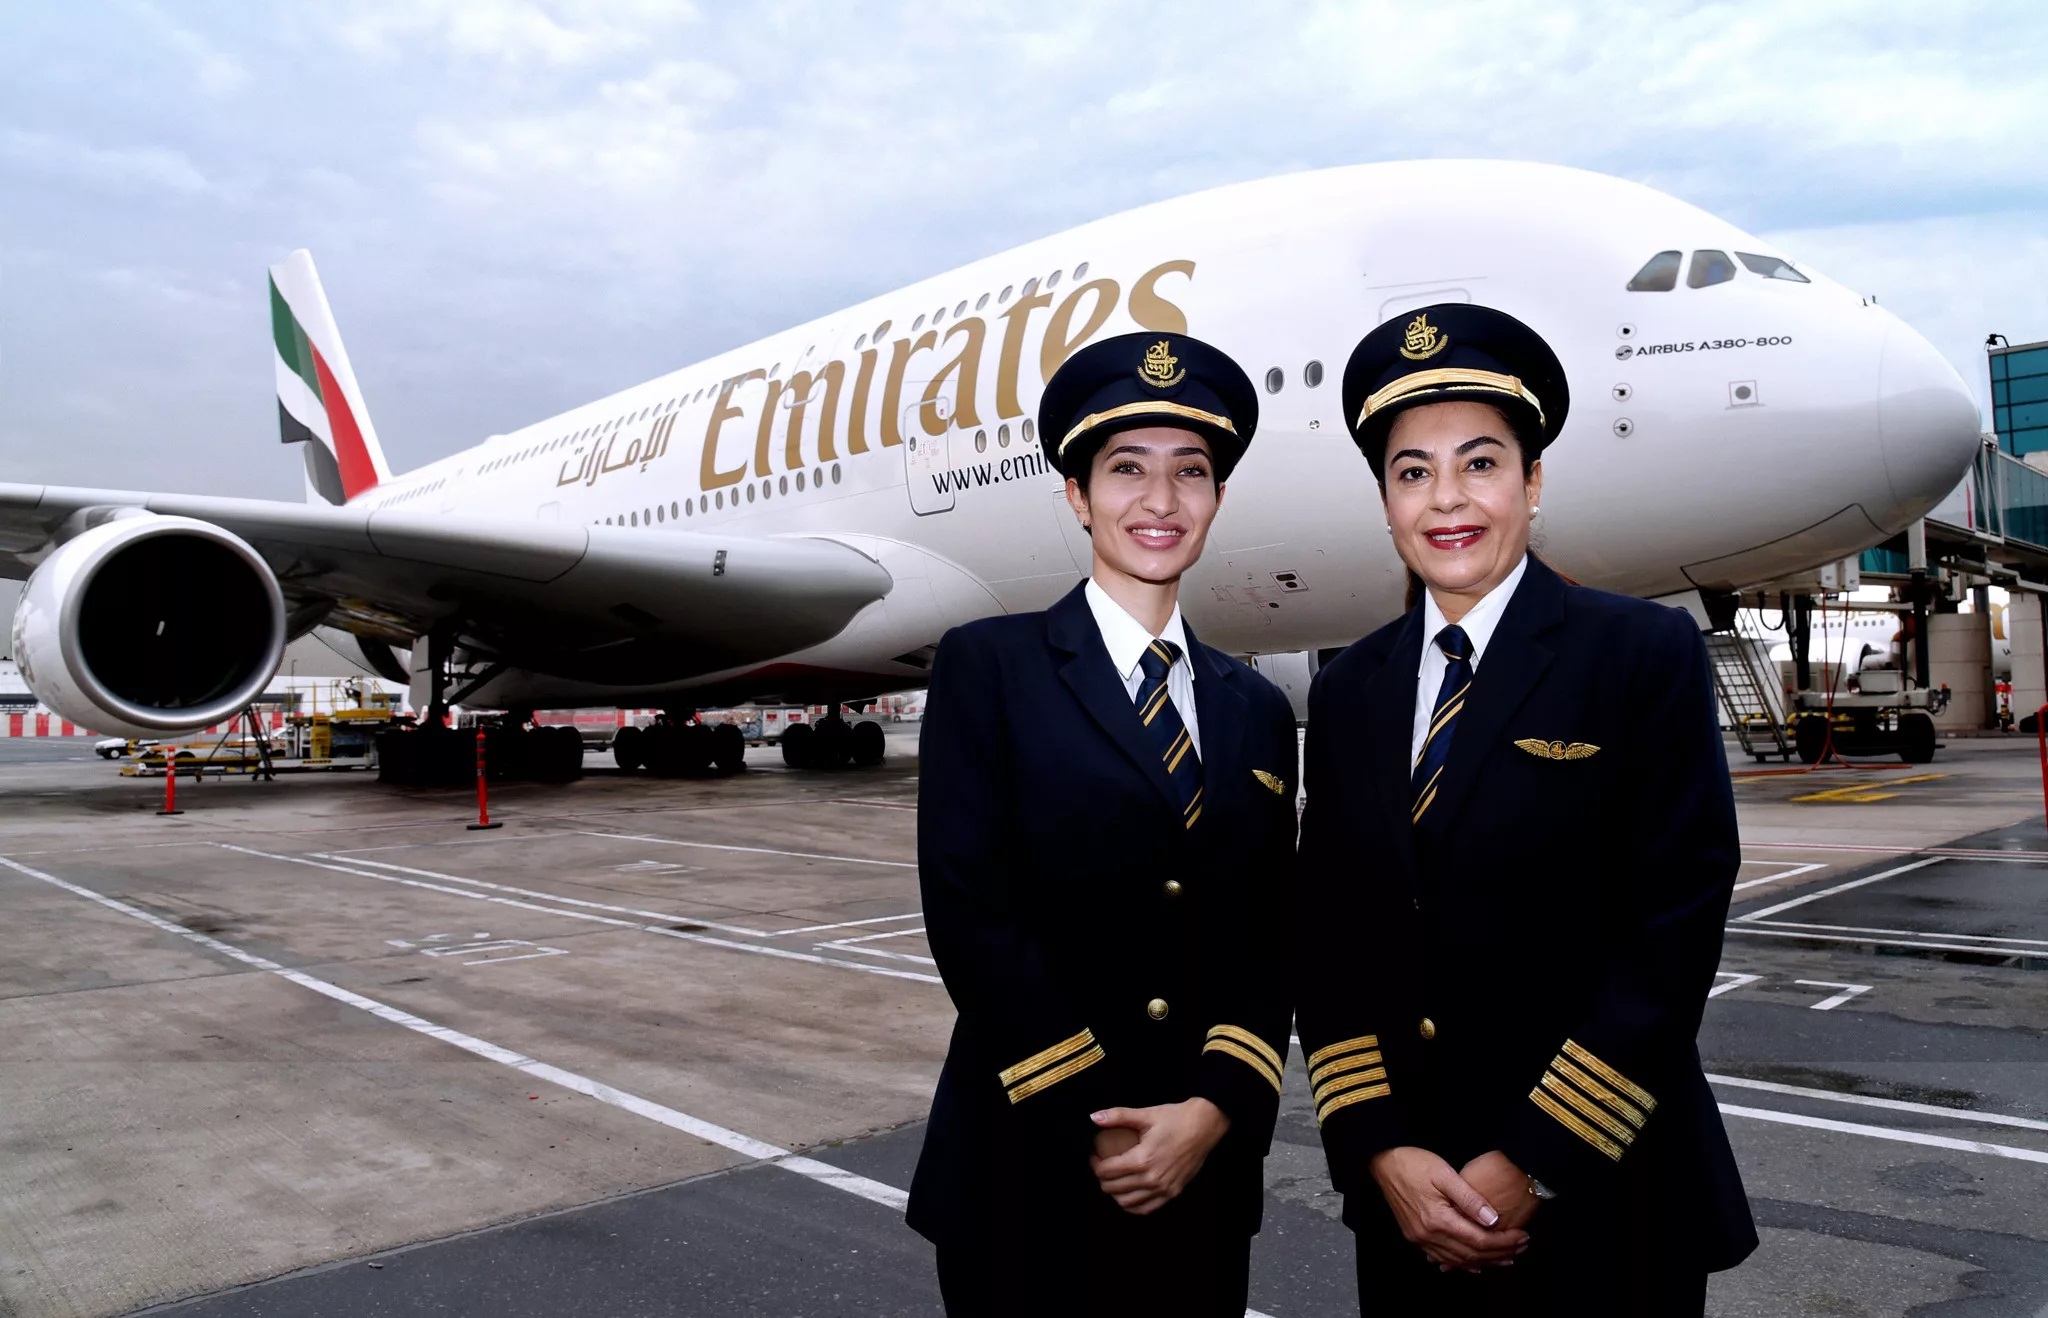 "Аэрофлот" и Emirates замкнули рейтинг авиакомпаний по числу женщин-пилотов